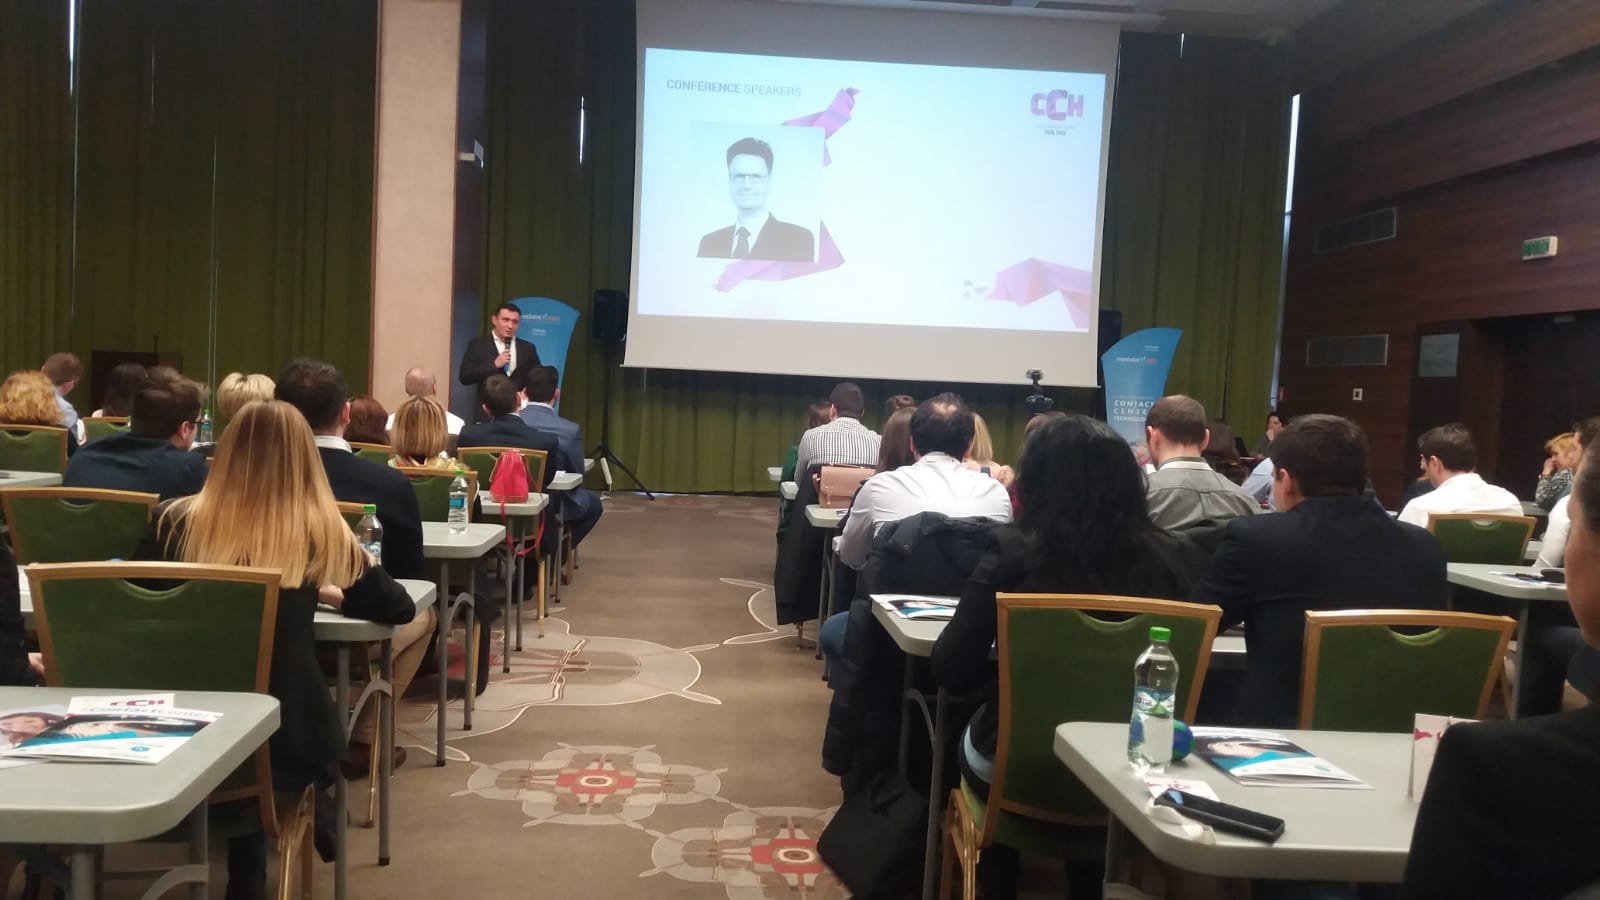  Conferință despre Inteligența Artificială la Iași – Customer Care Hub